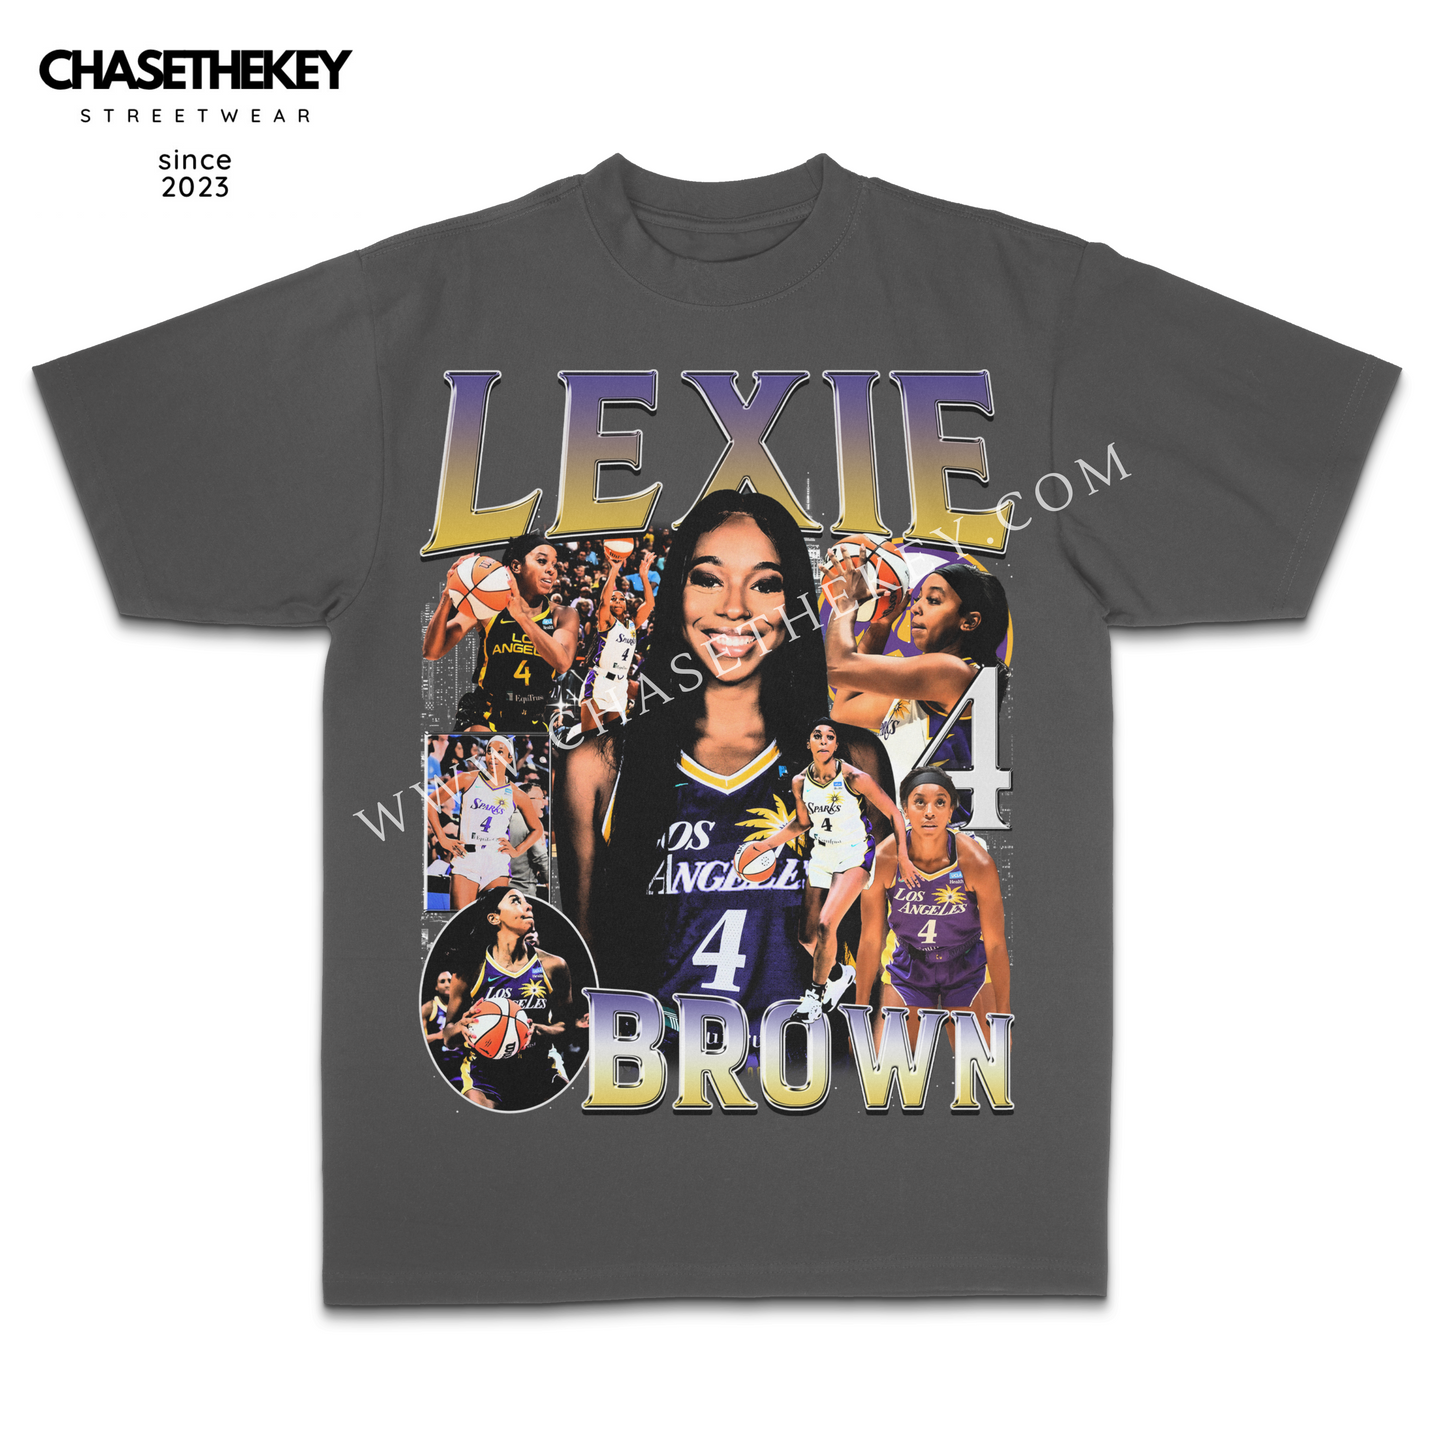 Lexie Brown Shirt